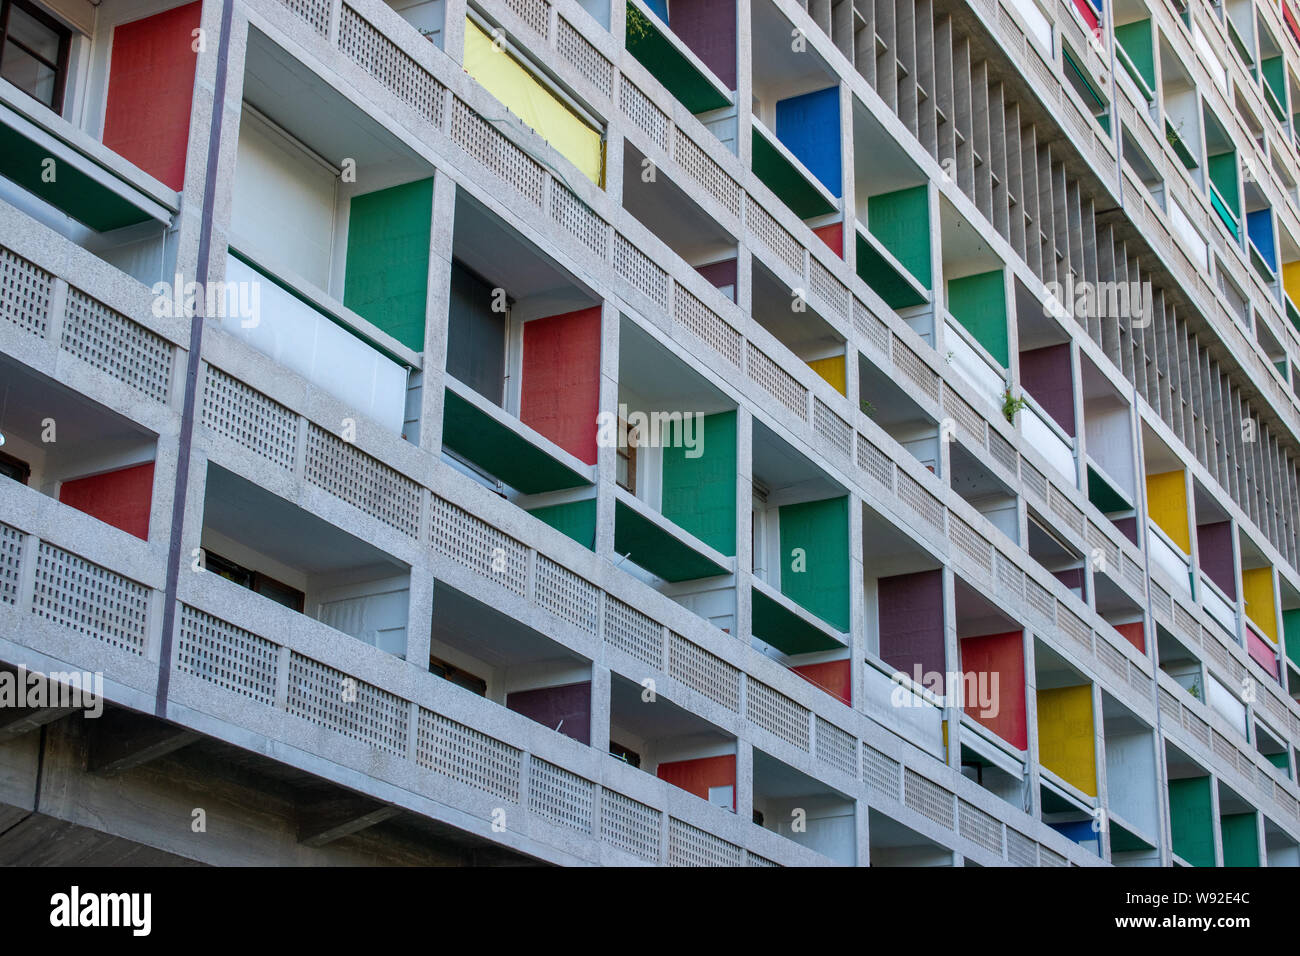 Cité radieuse, aussi connu comme la maison du fada - construction résidentielle à Marseille, France, conçu par l'architecte Le Corbusier Banque D'Images